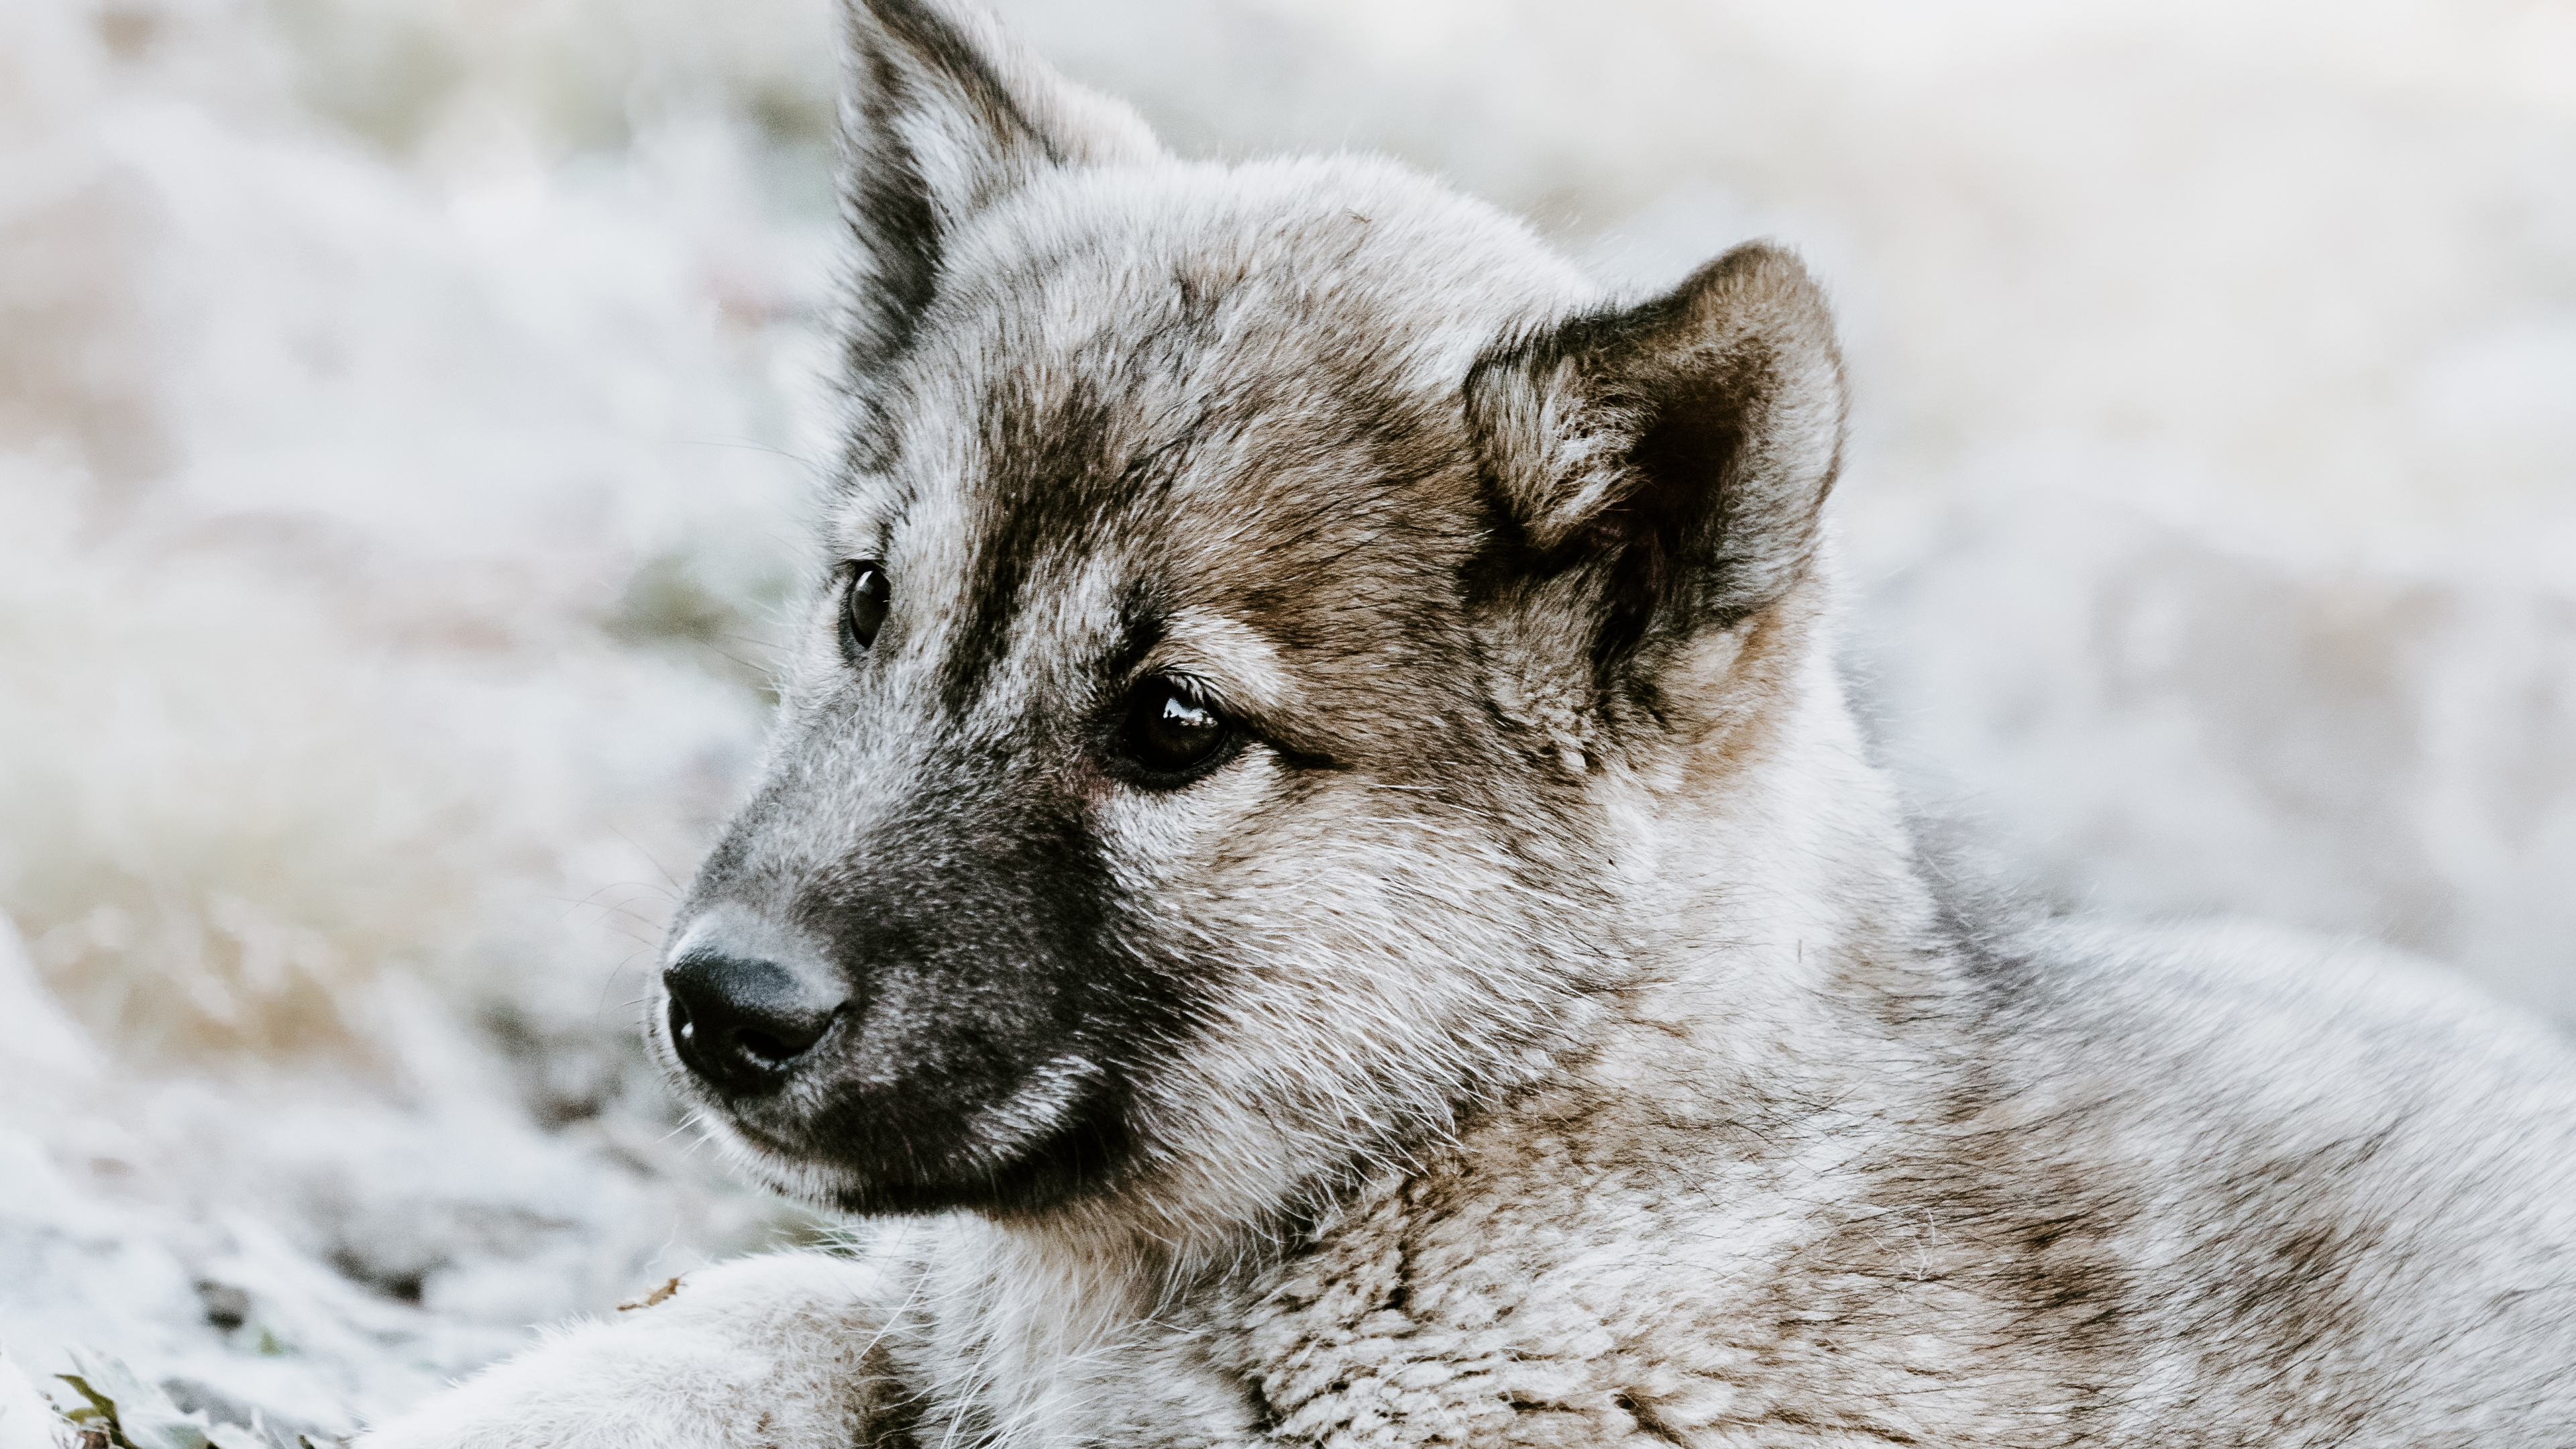 捷克斯洛伐克那只狼狗, 小狗, 挪威elkhound, 那只狼狗, 野生动物 壁纸 3840x2160 允许